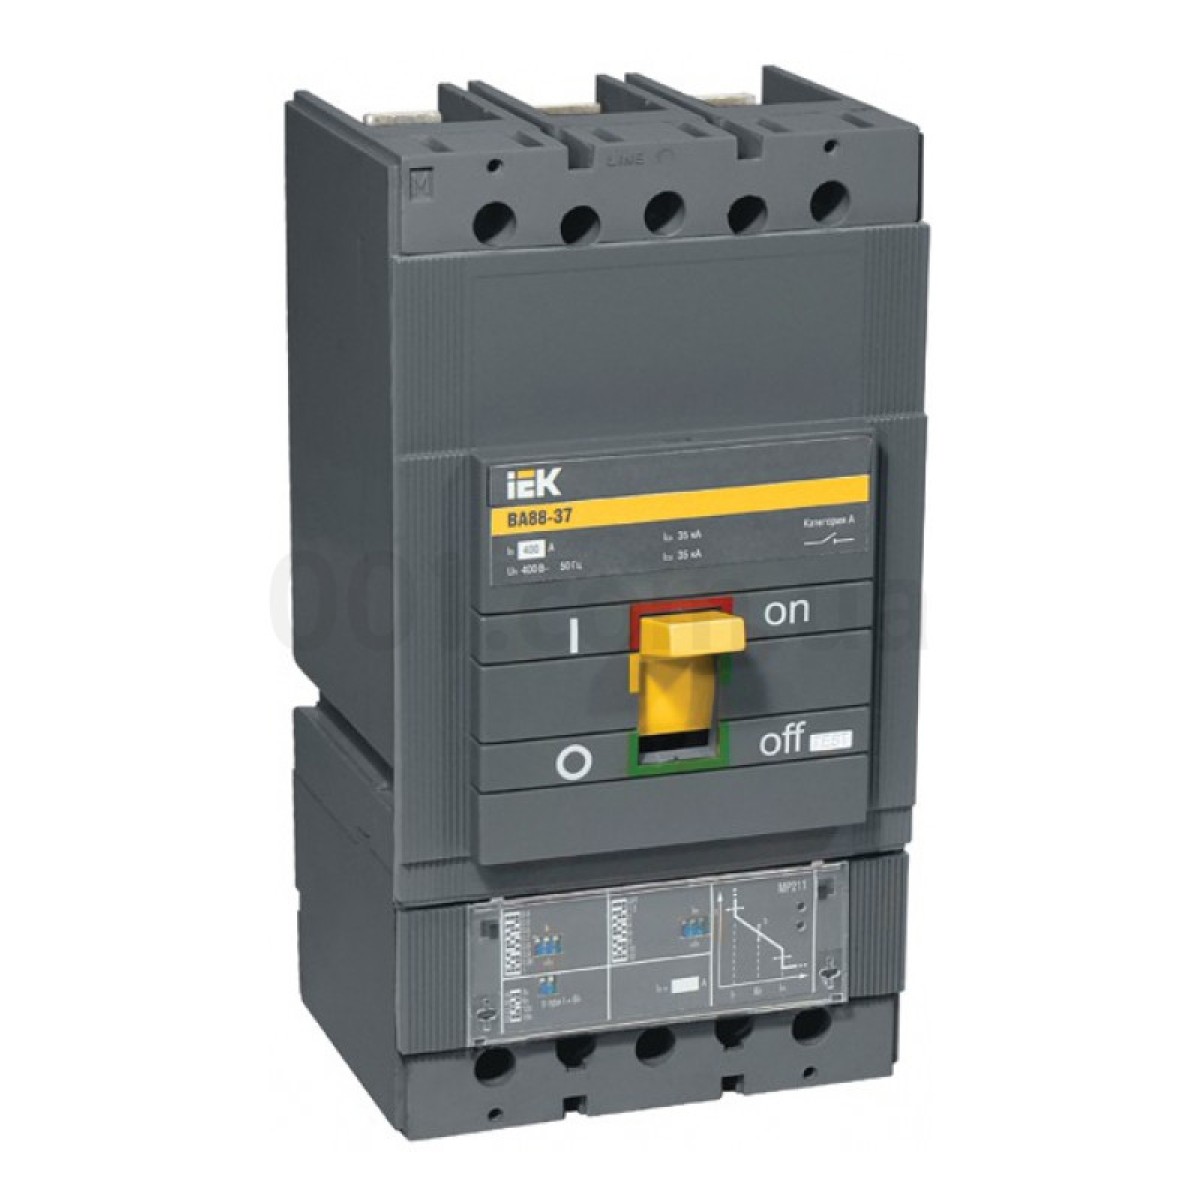 Автоматичний вимикач ВА88-37 3P 400А 35кА з електронним розчеплювачем MP211, IEK 256_256.jpg